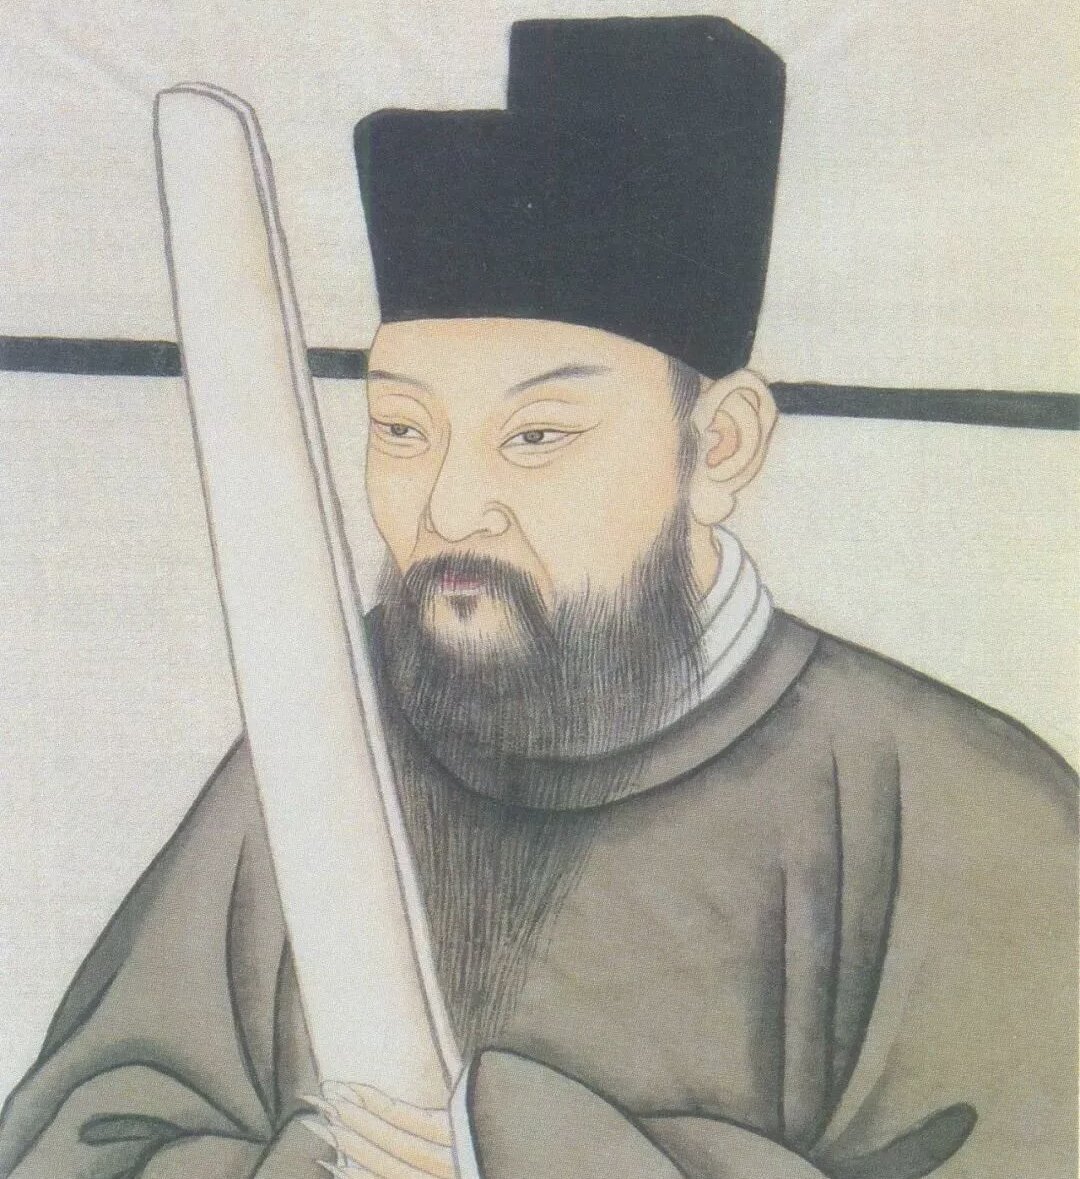 Цай Сян (1012–1067) - был известным каллиграфом из Сянью, провинция Фуцзянь.